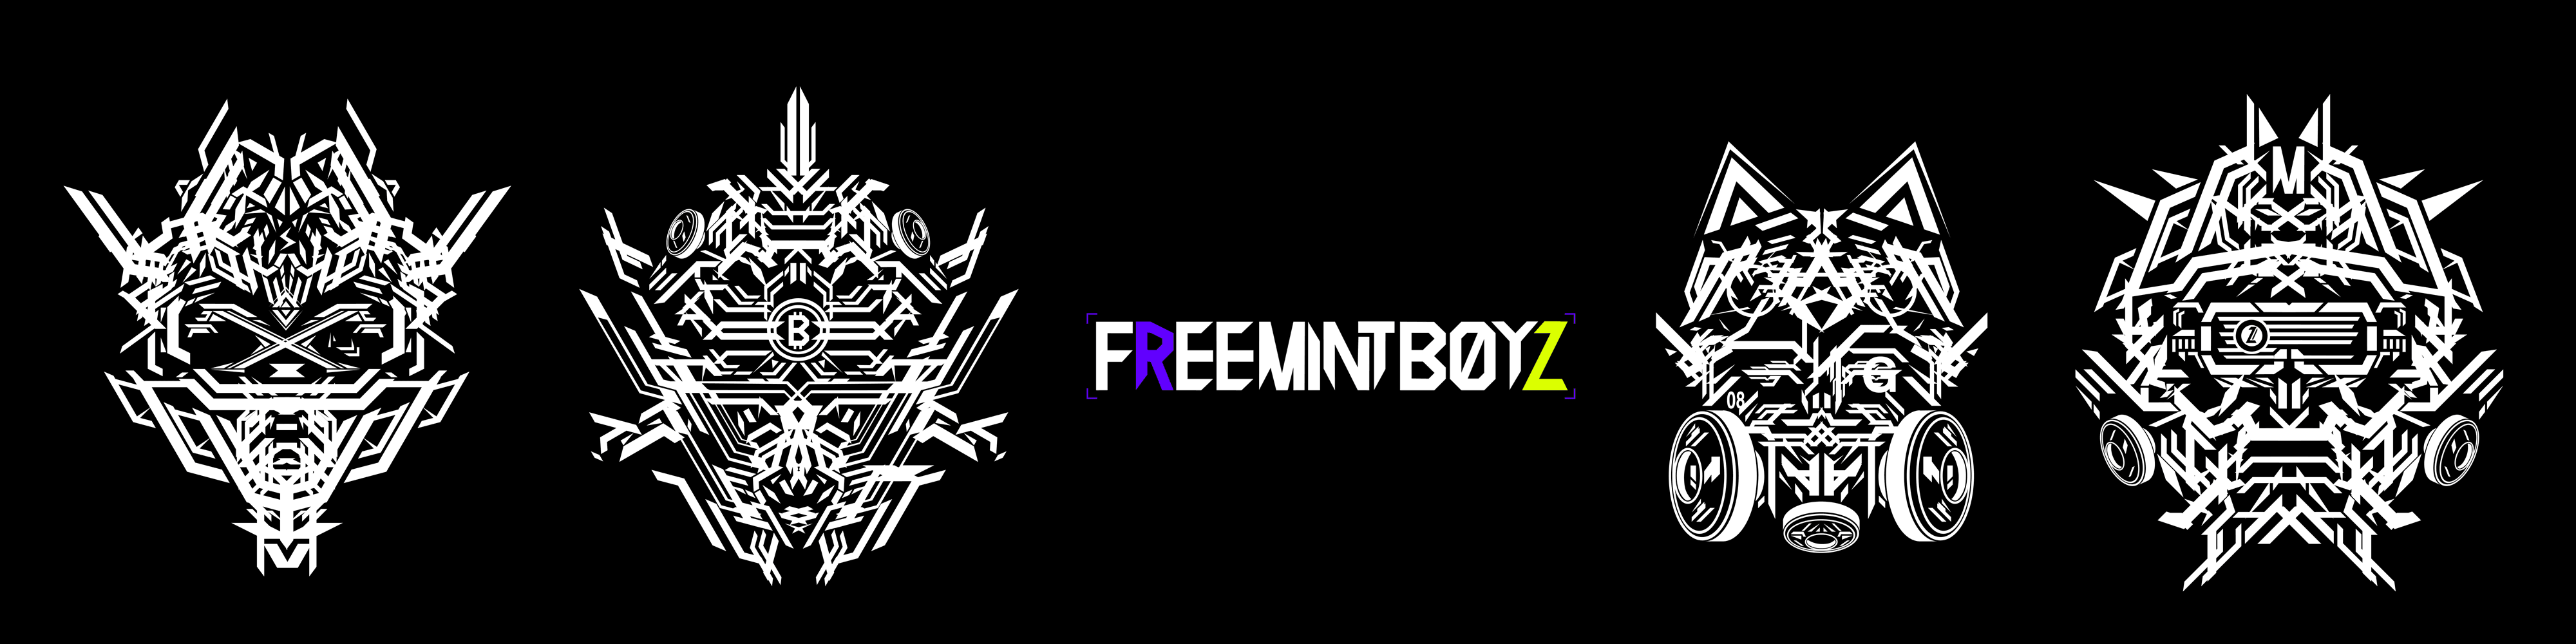 FREEMINTBOYZ banner